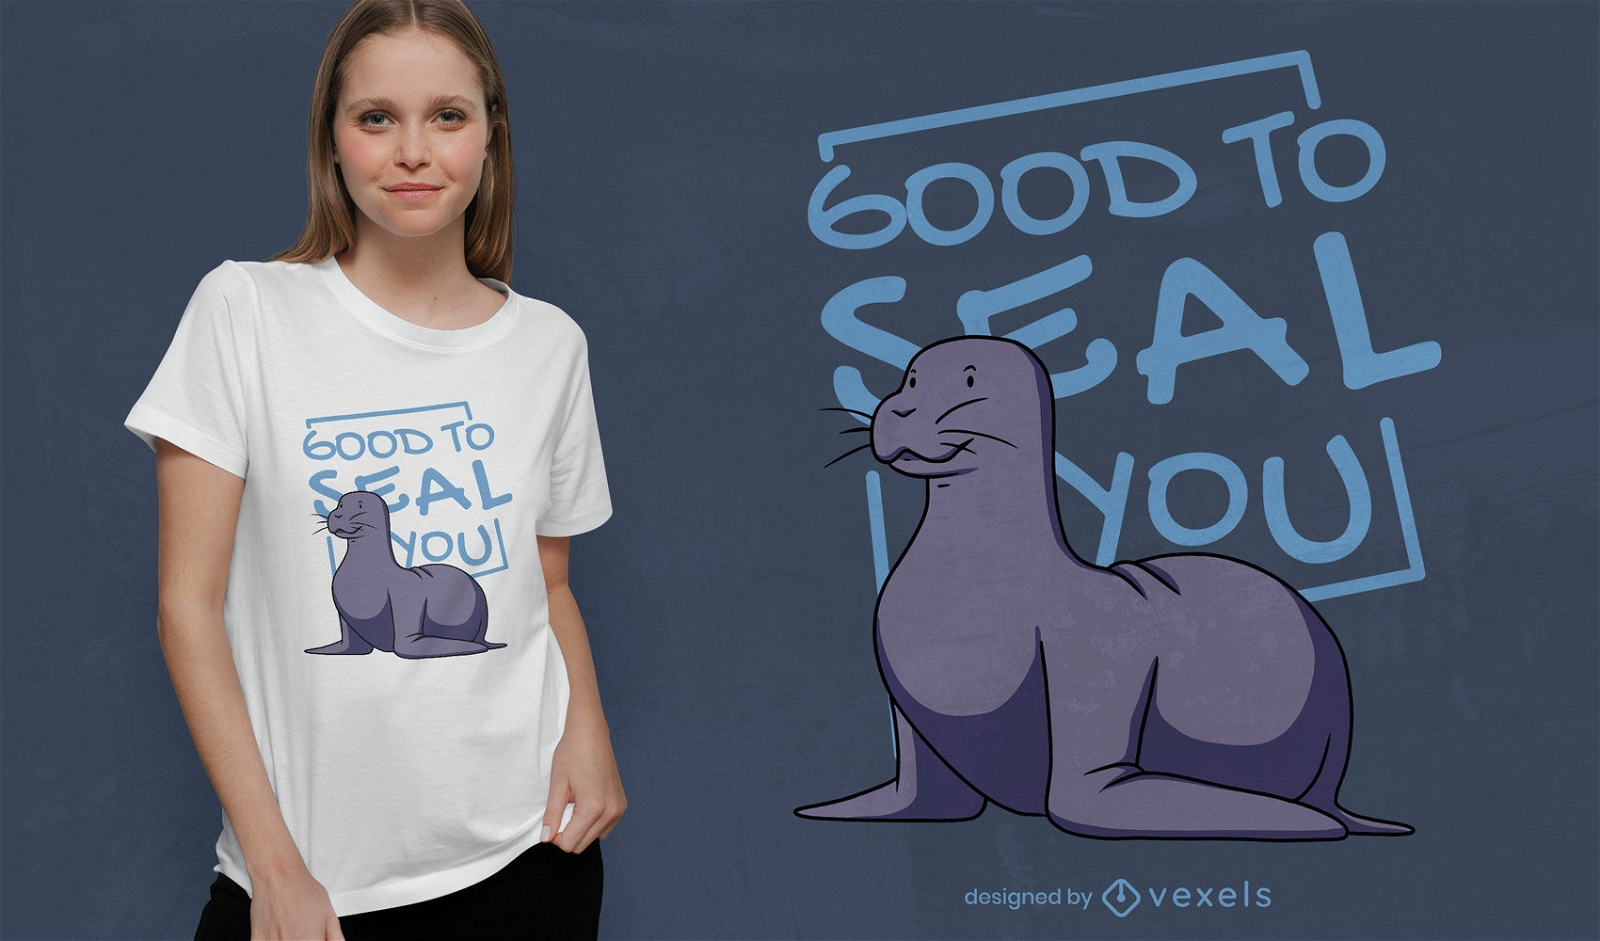 Versiegeln Sie lustiges Wortspiel-T-Shirt-Design